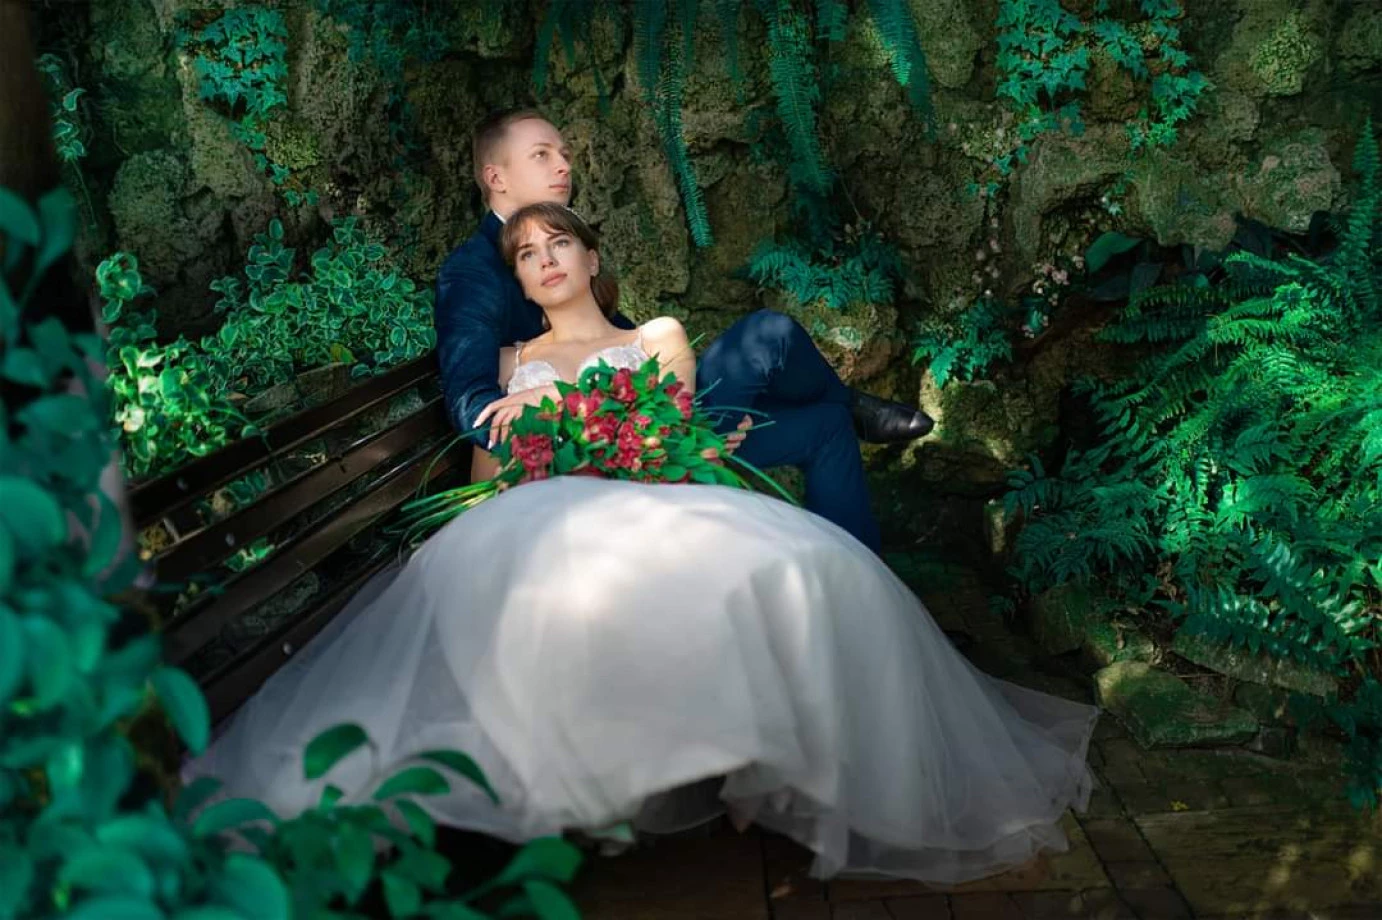 fotograf walbrzych tomasz-tuminski-fantomash portfolio zdjecia slubne inspiracje wesele plener slubny sesja slubna